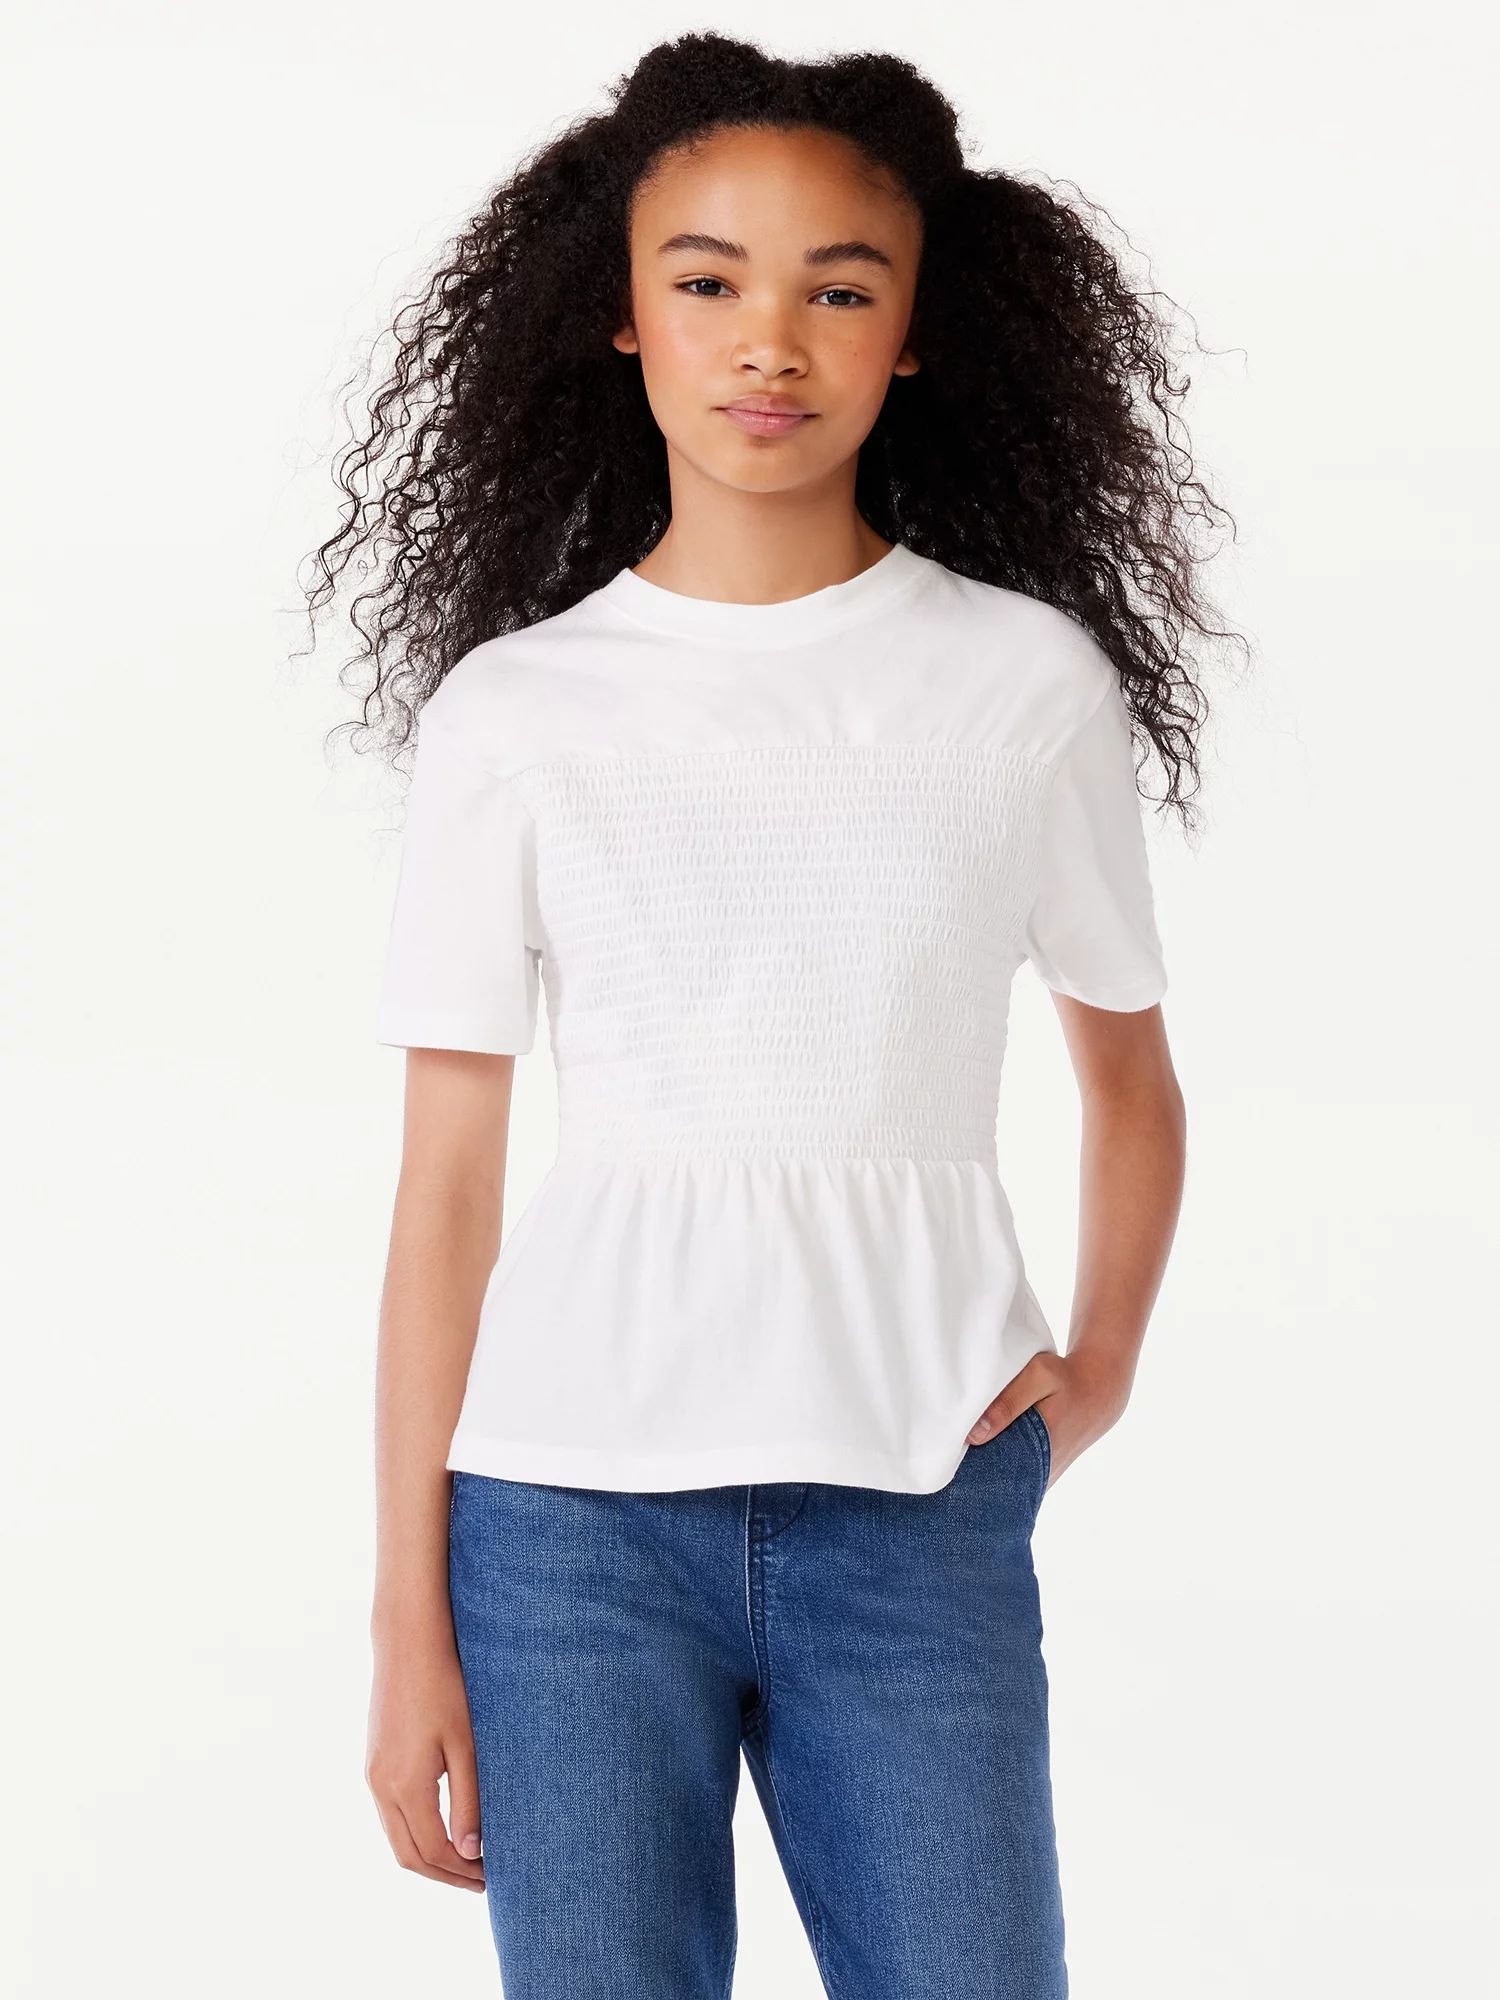 Free Assembly Girls Short Sleeve Smocked T-Shirt, Sizes 4-18 | Walmart (US)